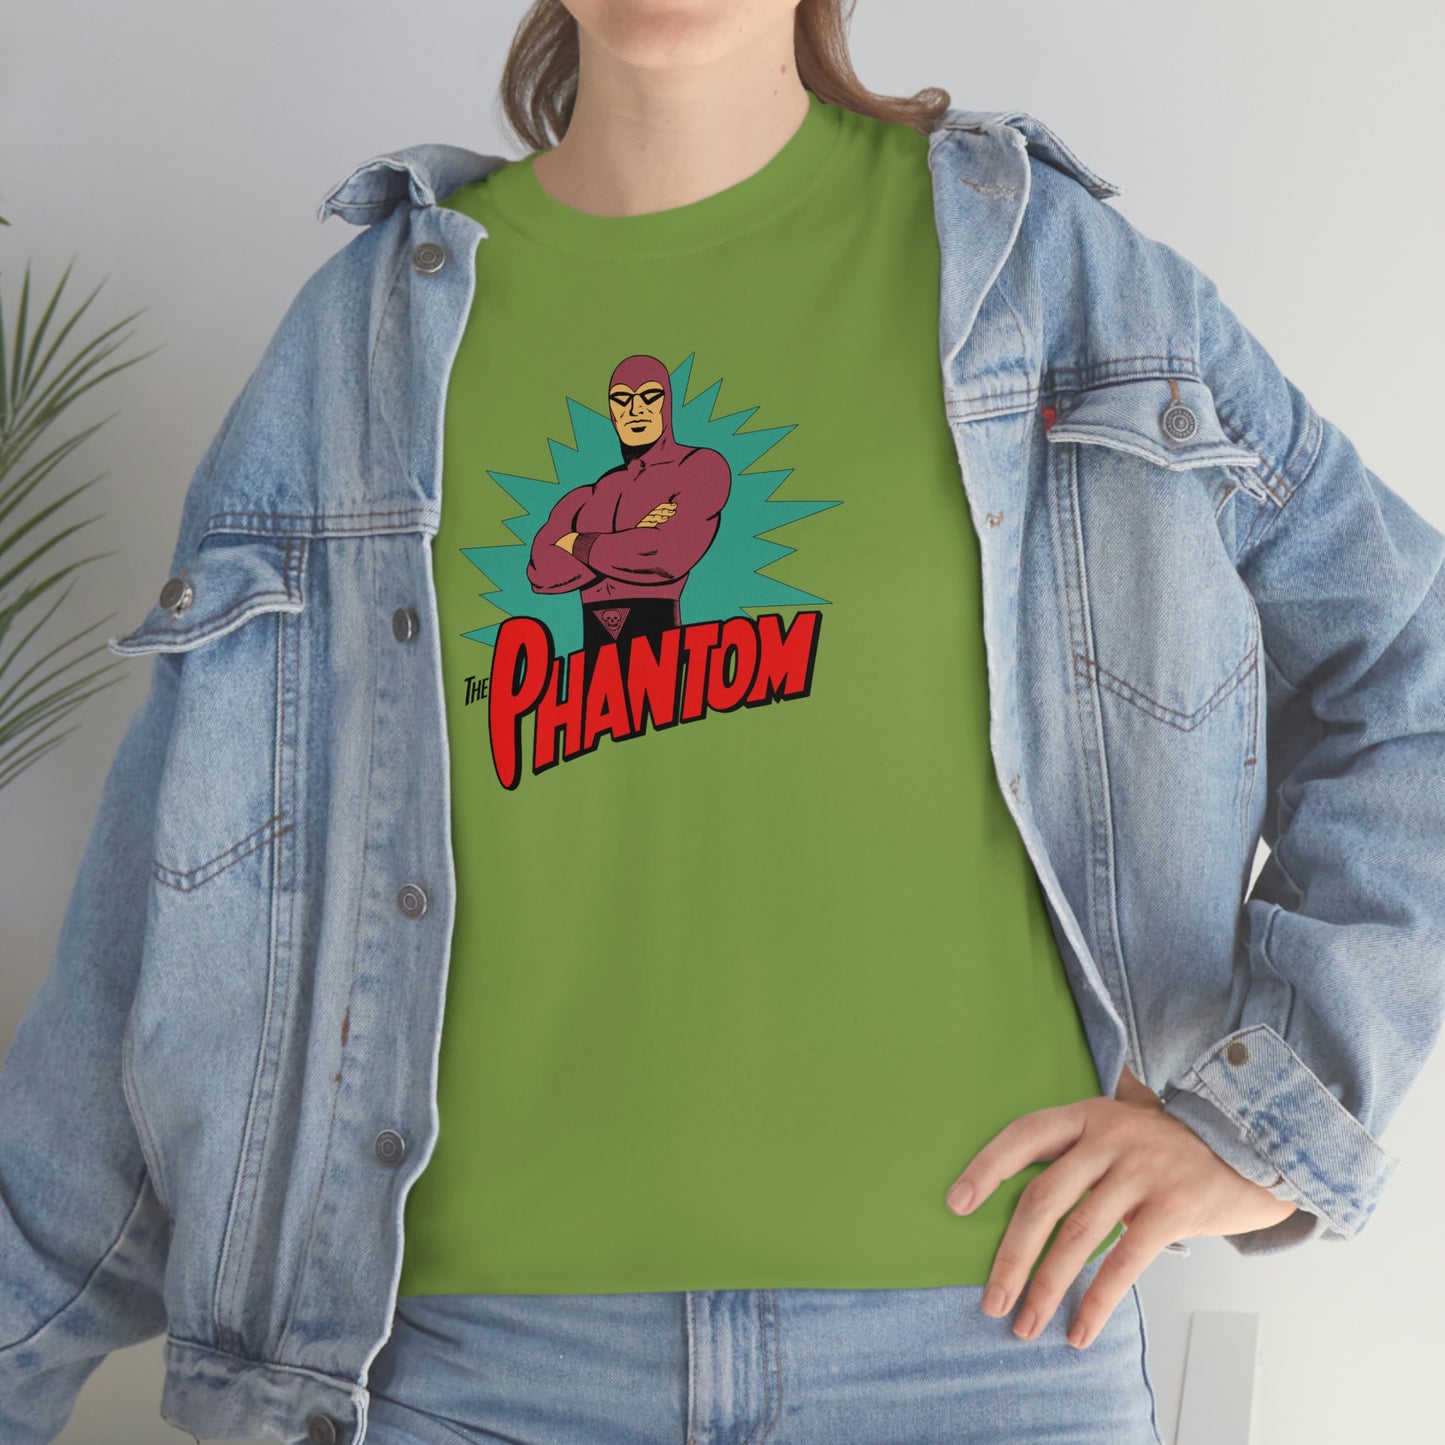 The Phantom T-Shirt